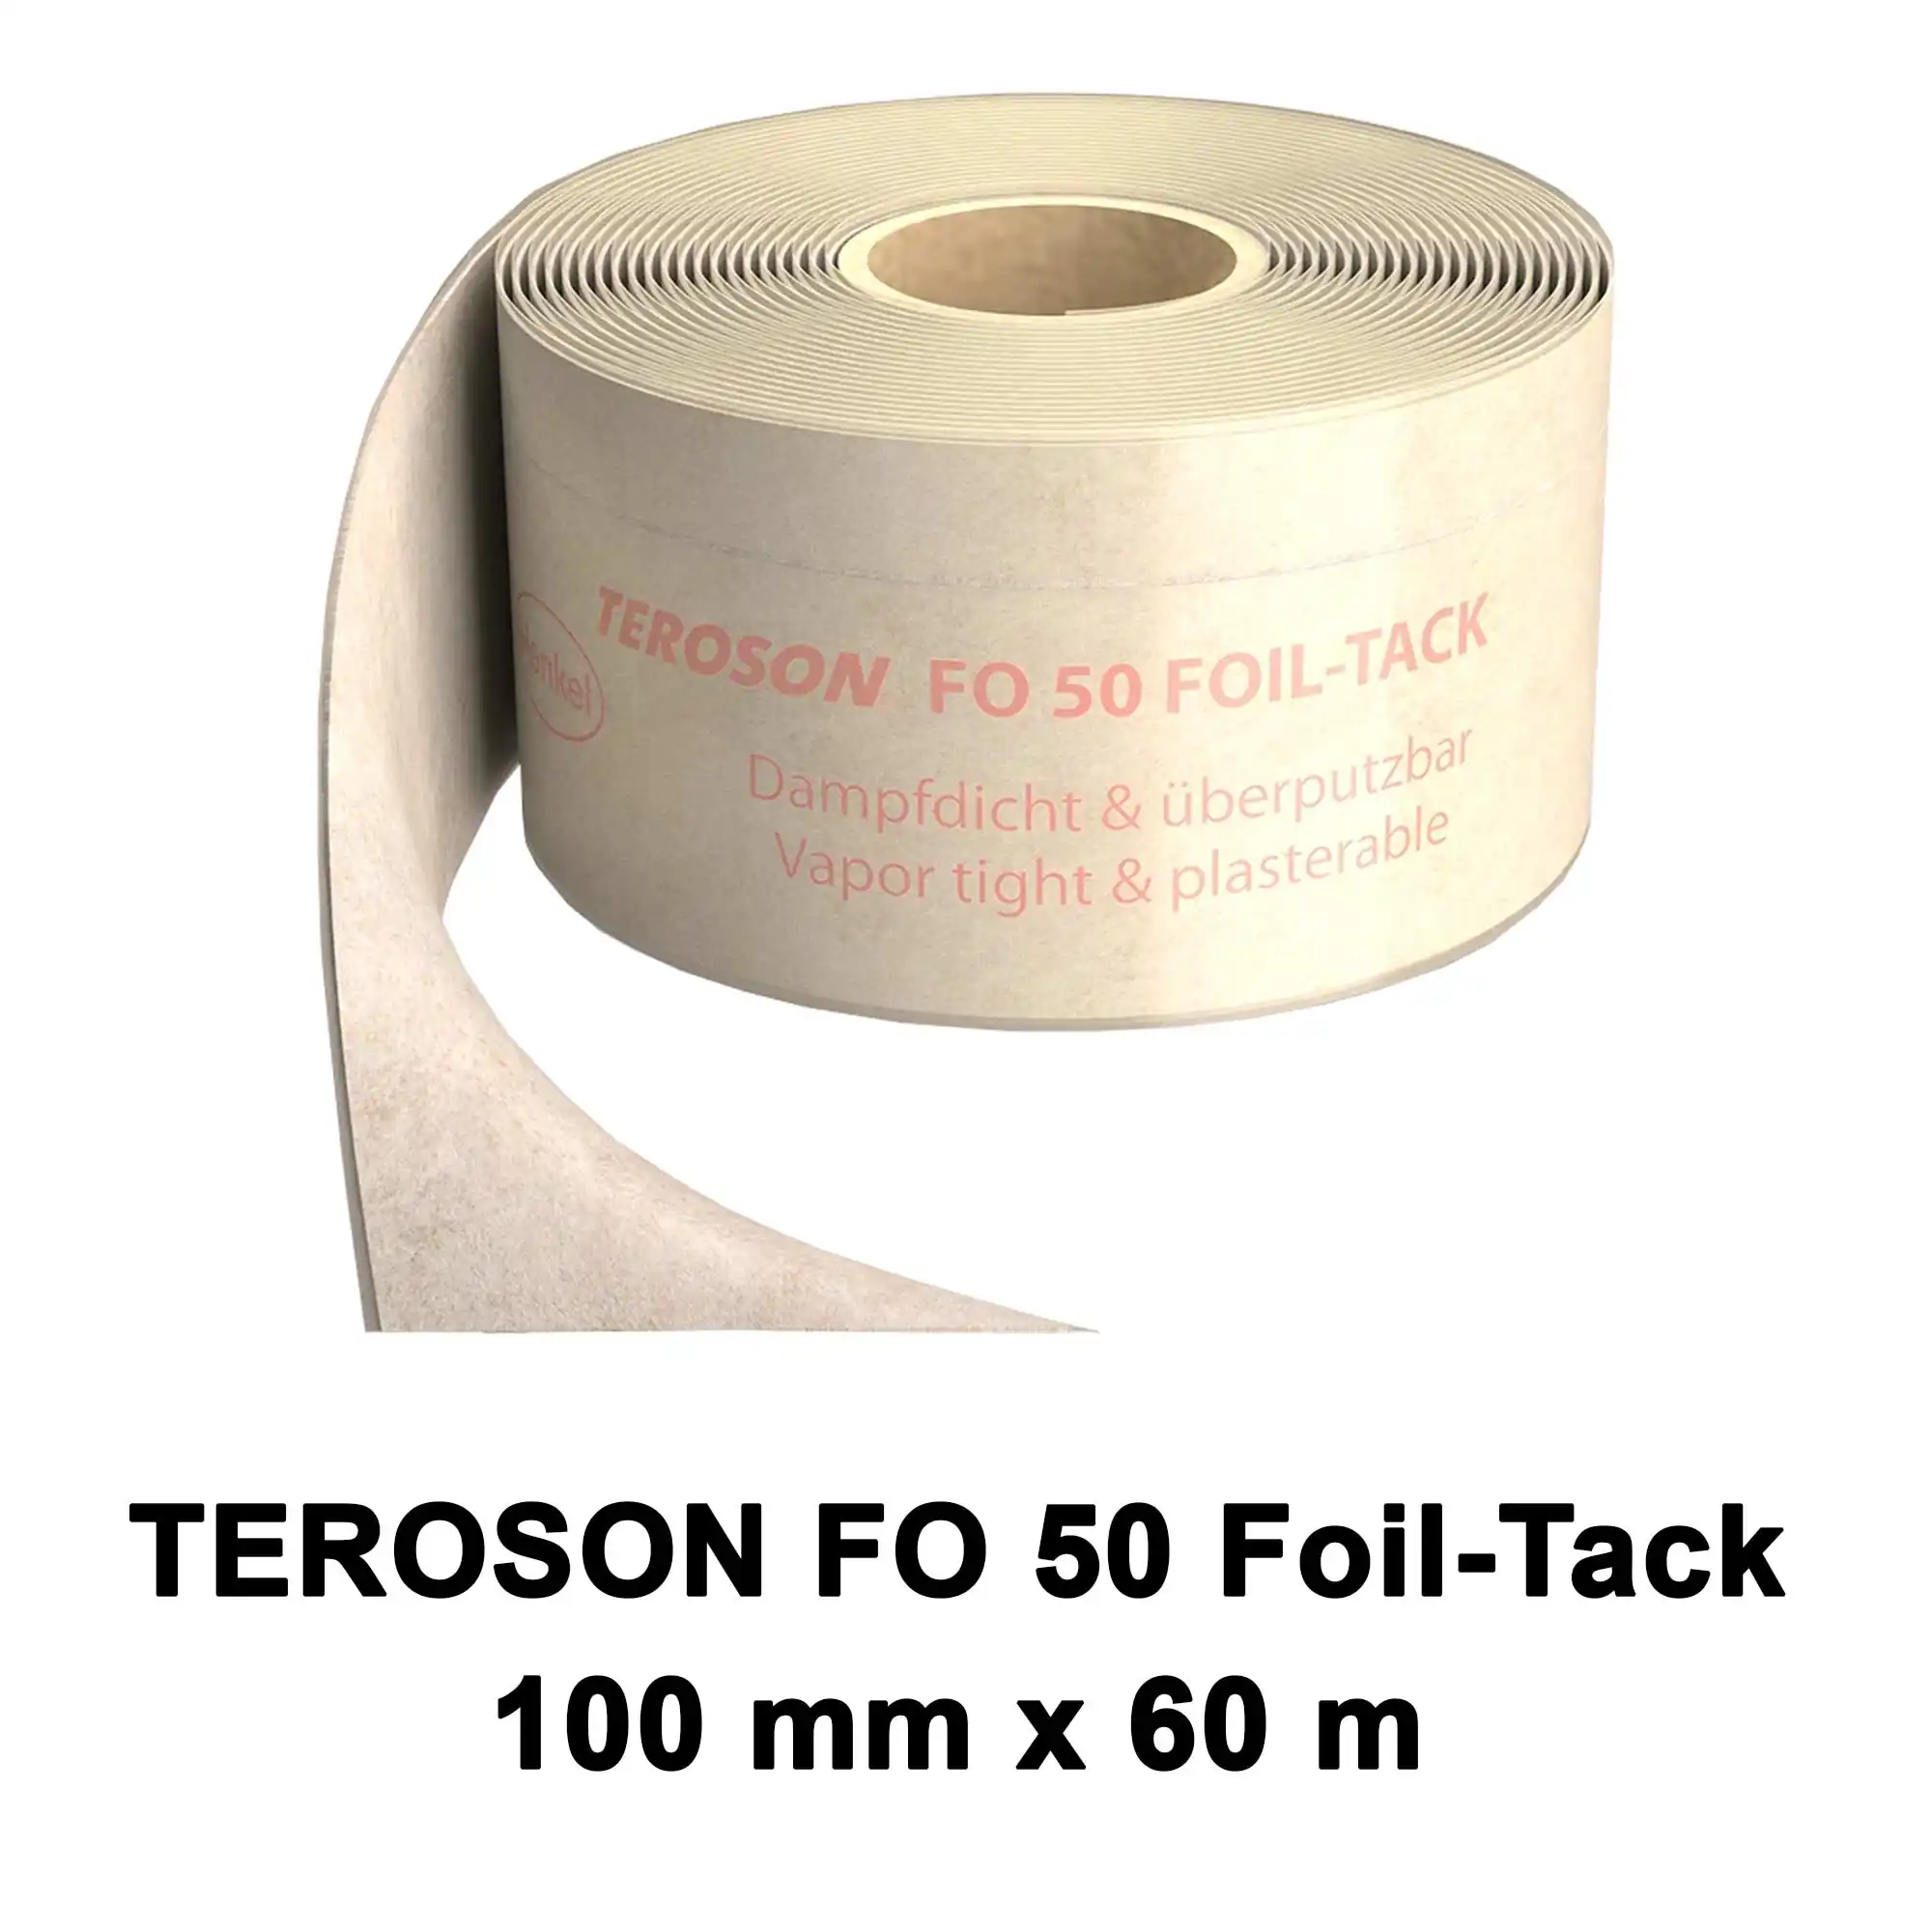 Dichtfolie TEROSON FO 50 FOIL-TACK 100mm x 60m